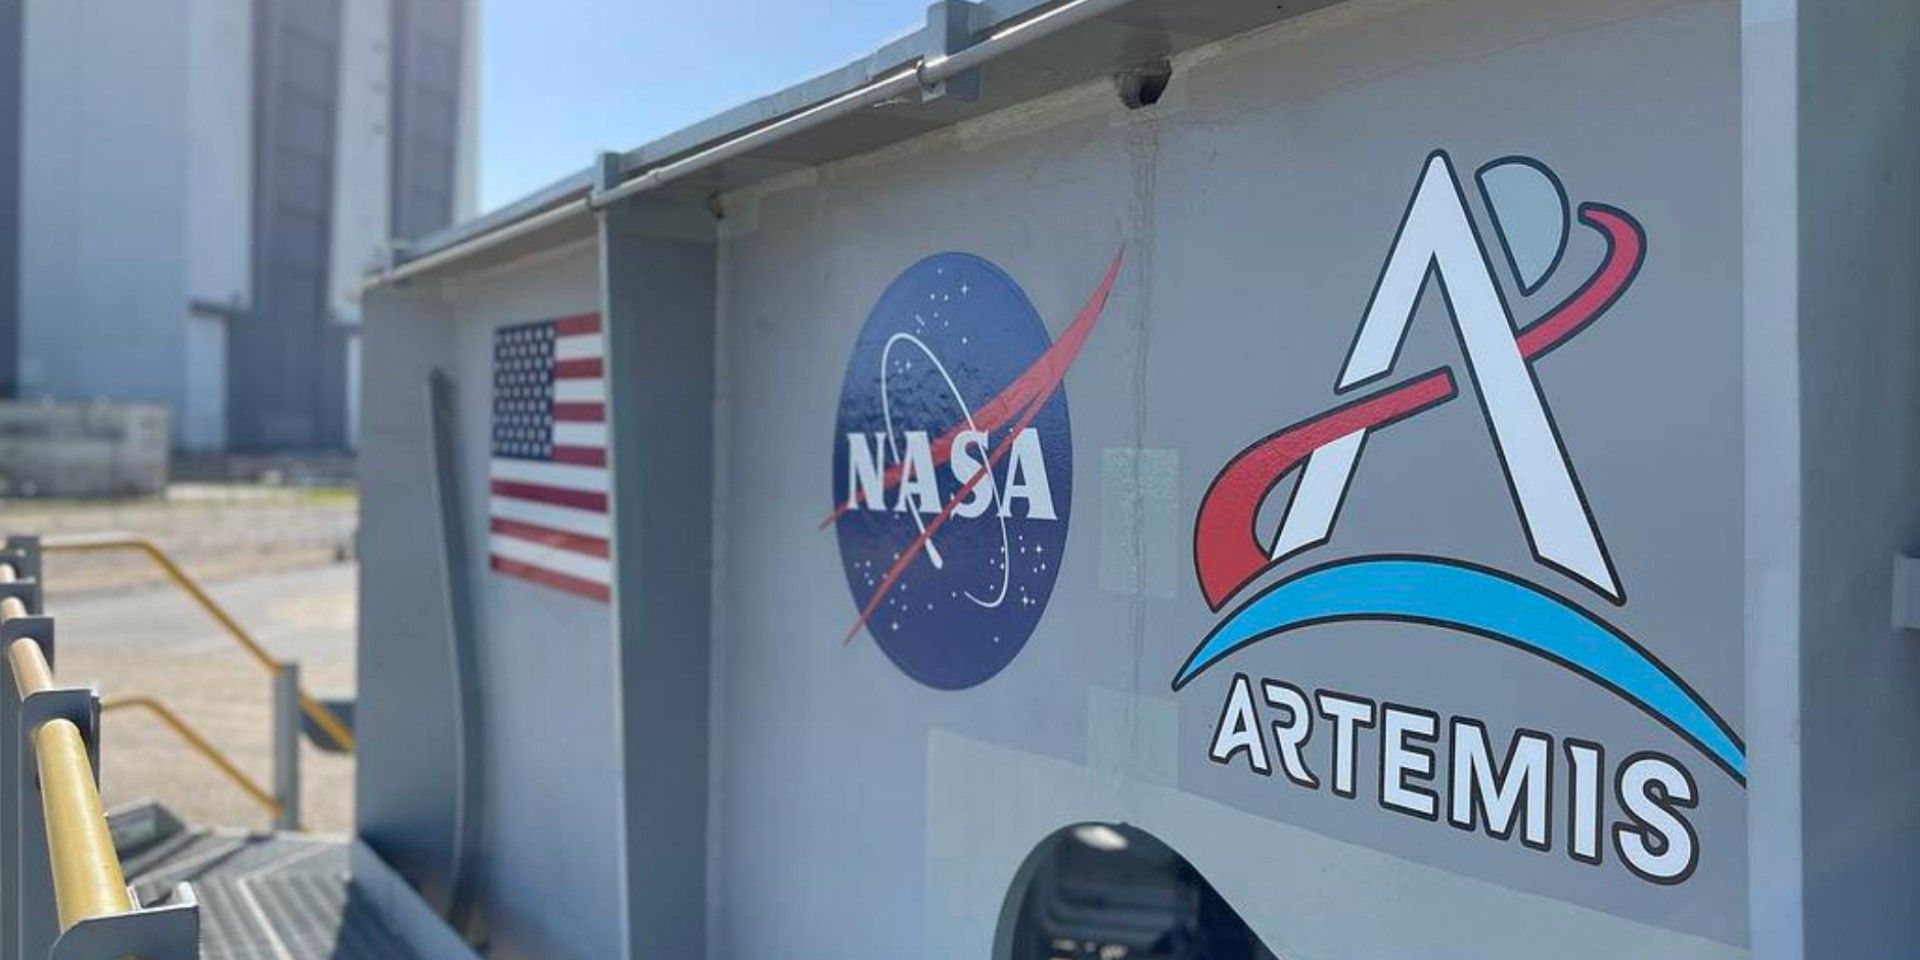 Artemis NASA